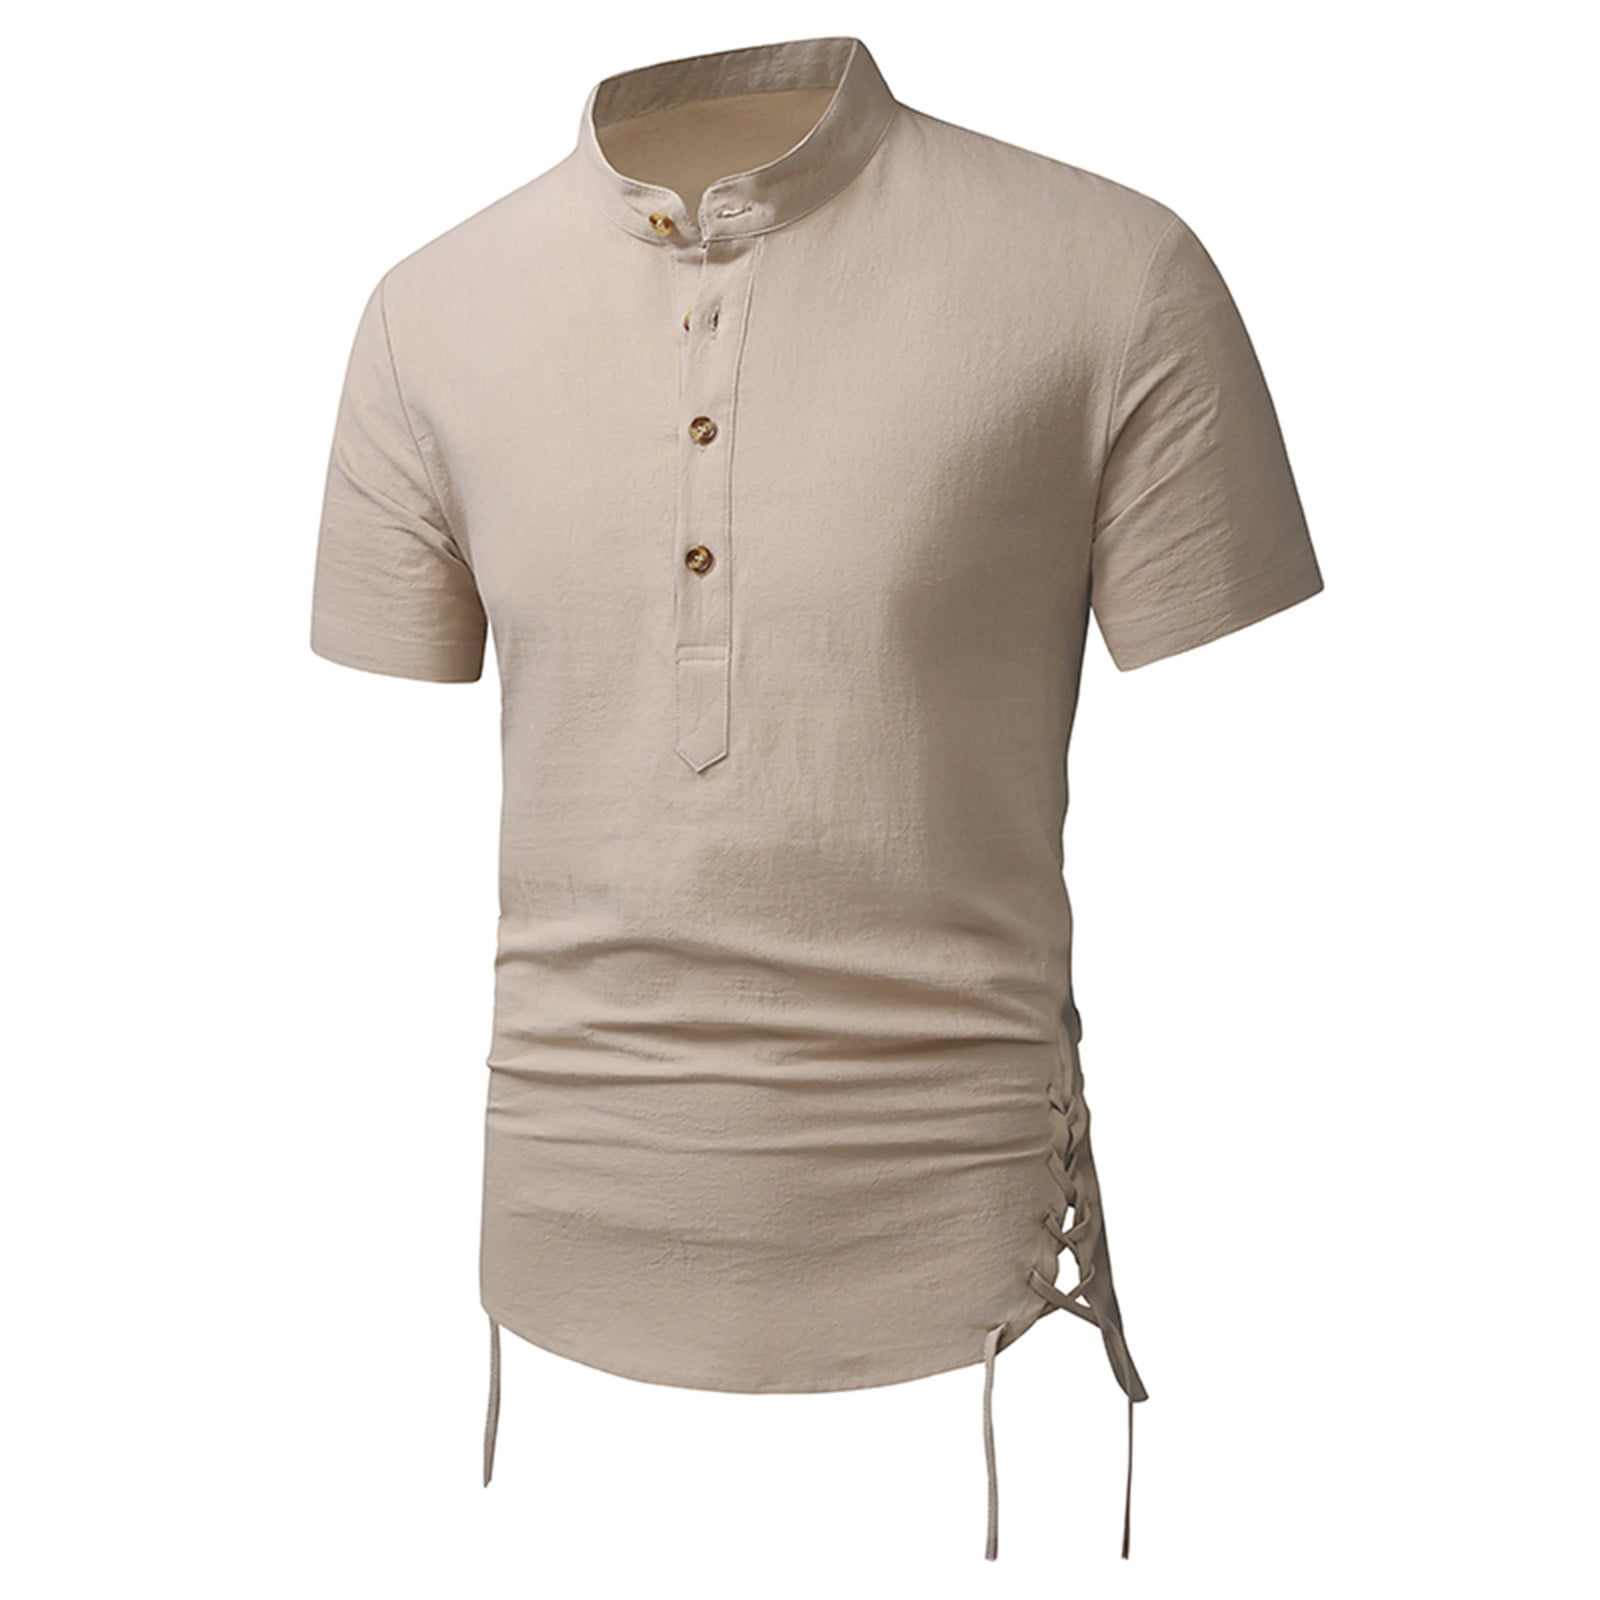 VSSSJ Mens Cotton Short Sleeve Pullover Shirts Loose Fit Side Slit